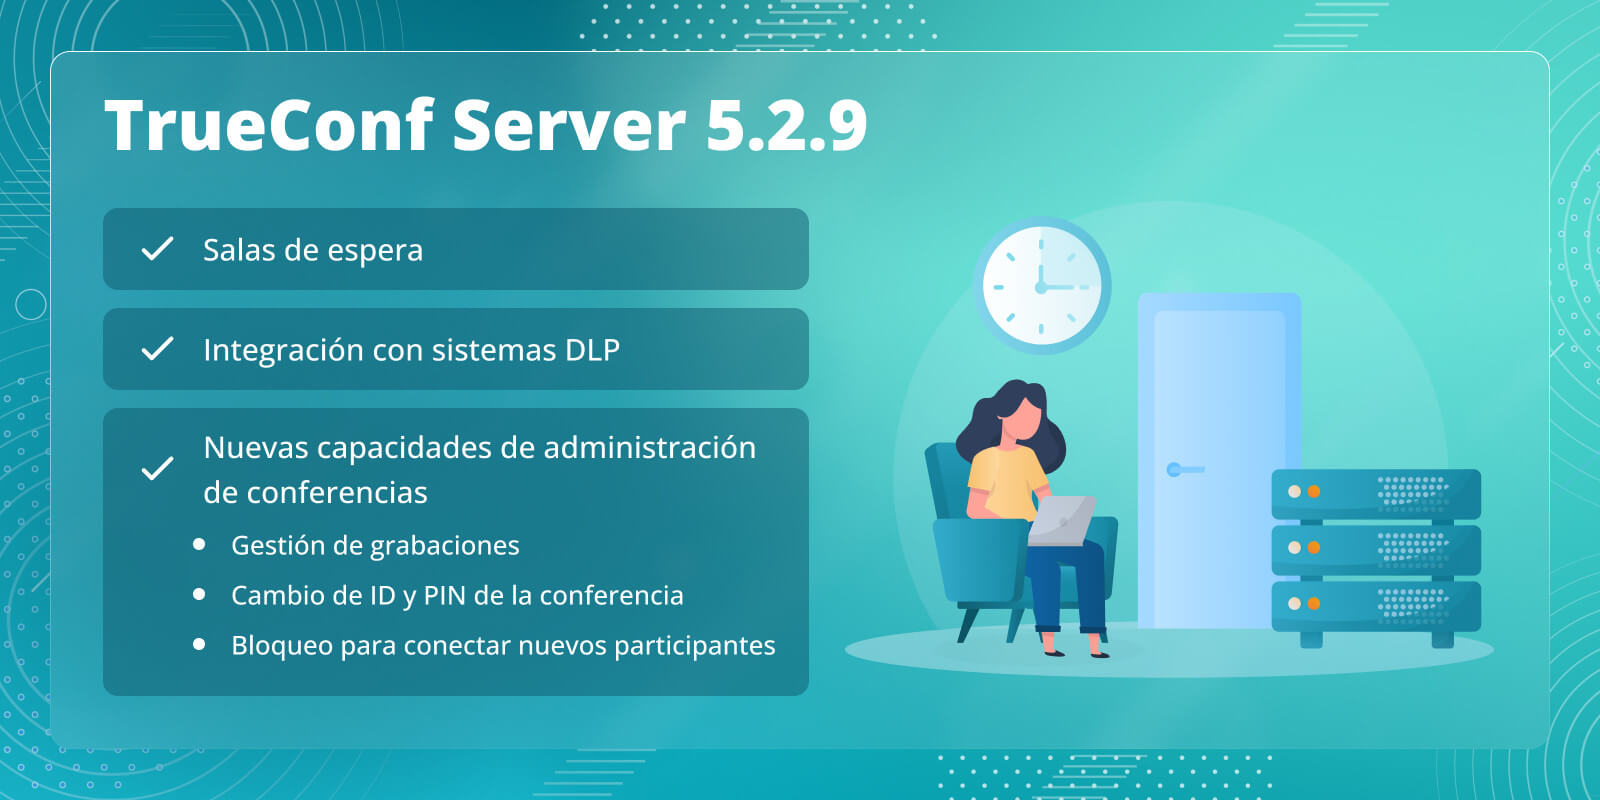 TrueConf Server 5.2.9: Salas de espera, integración con sistemas DLP y nuevas capacidades de administración de reuniones en tiempo real 1